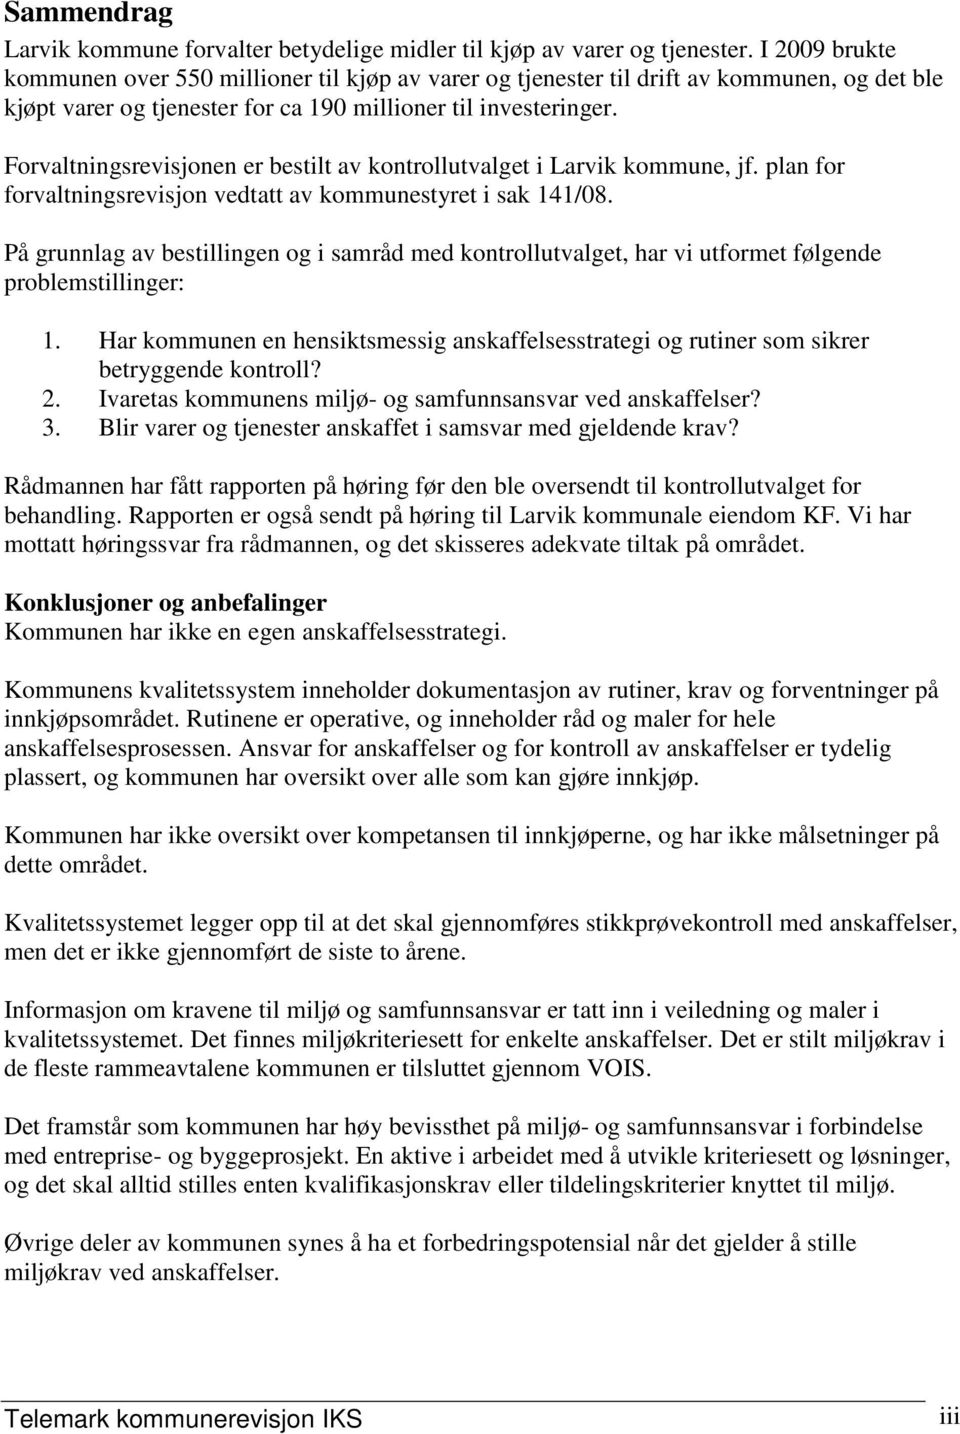 Forvaltningsrevisjonen er bestilt av kontrollutvalget i Larvik kommune, jf. plan for forvaltningsrevisjon vedtatt av kommunestyret i sak 141/08.